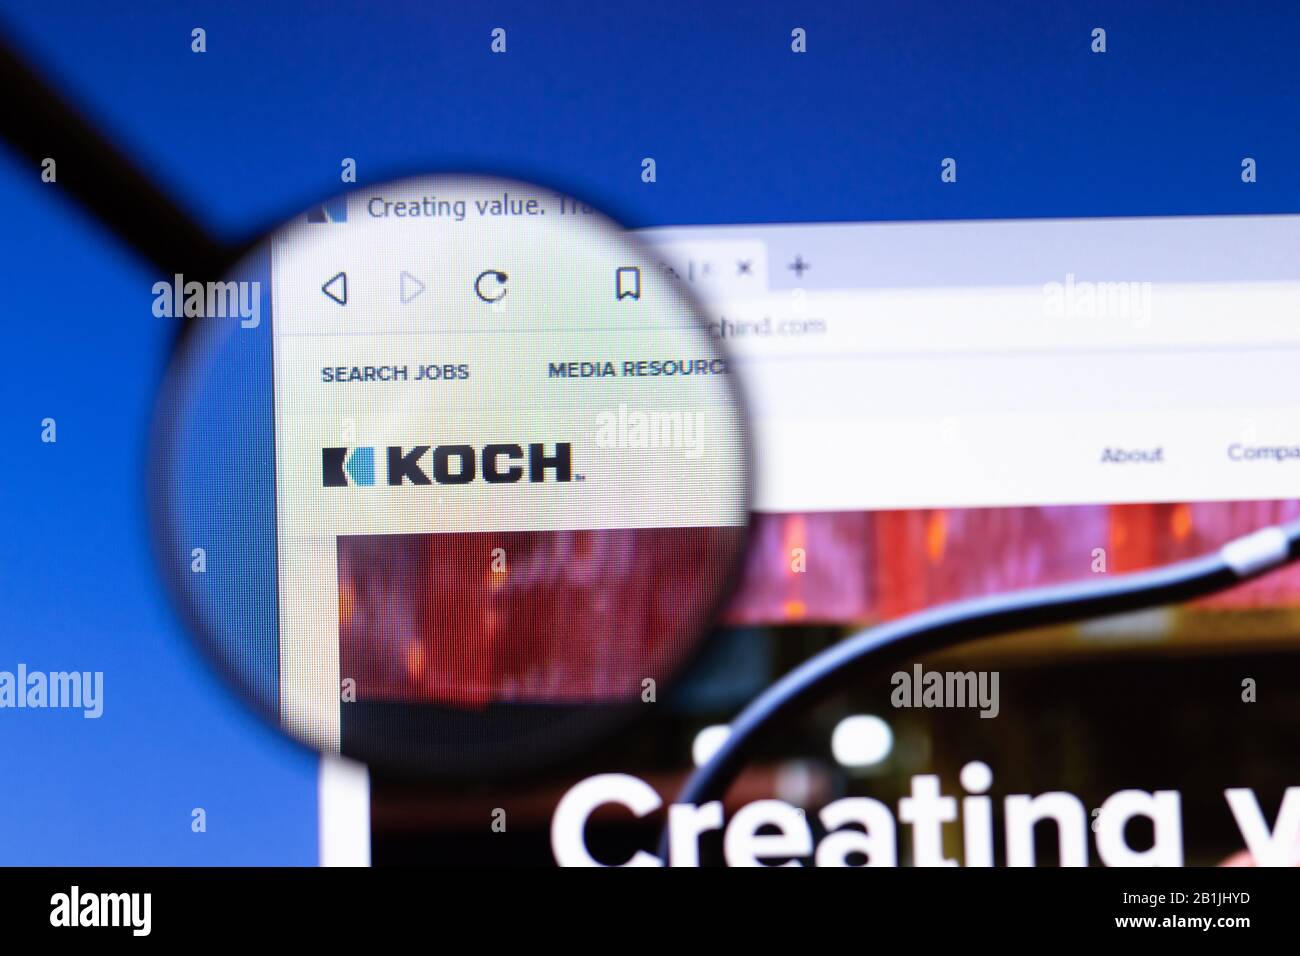 Los Angeles, Kalifornien, USA - 25. Februar 2020: Koch Industries Website Homepage Icon. Das Kochind.com Logo ist auf dem Bildschirm zu Sehen und Illustriert Stockfoto